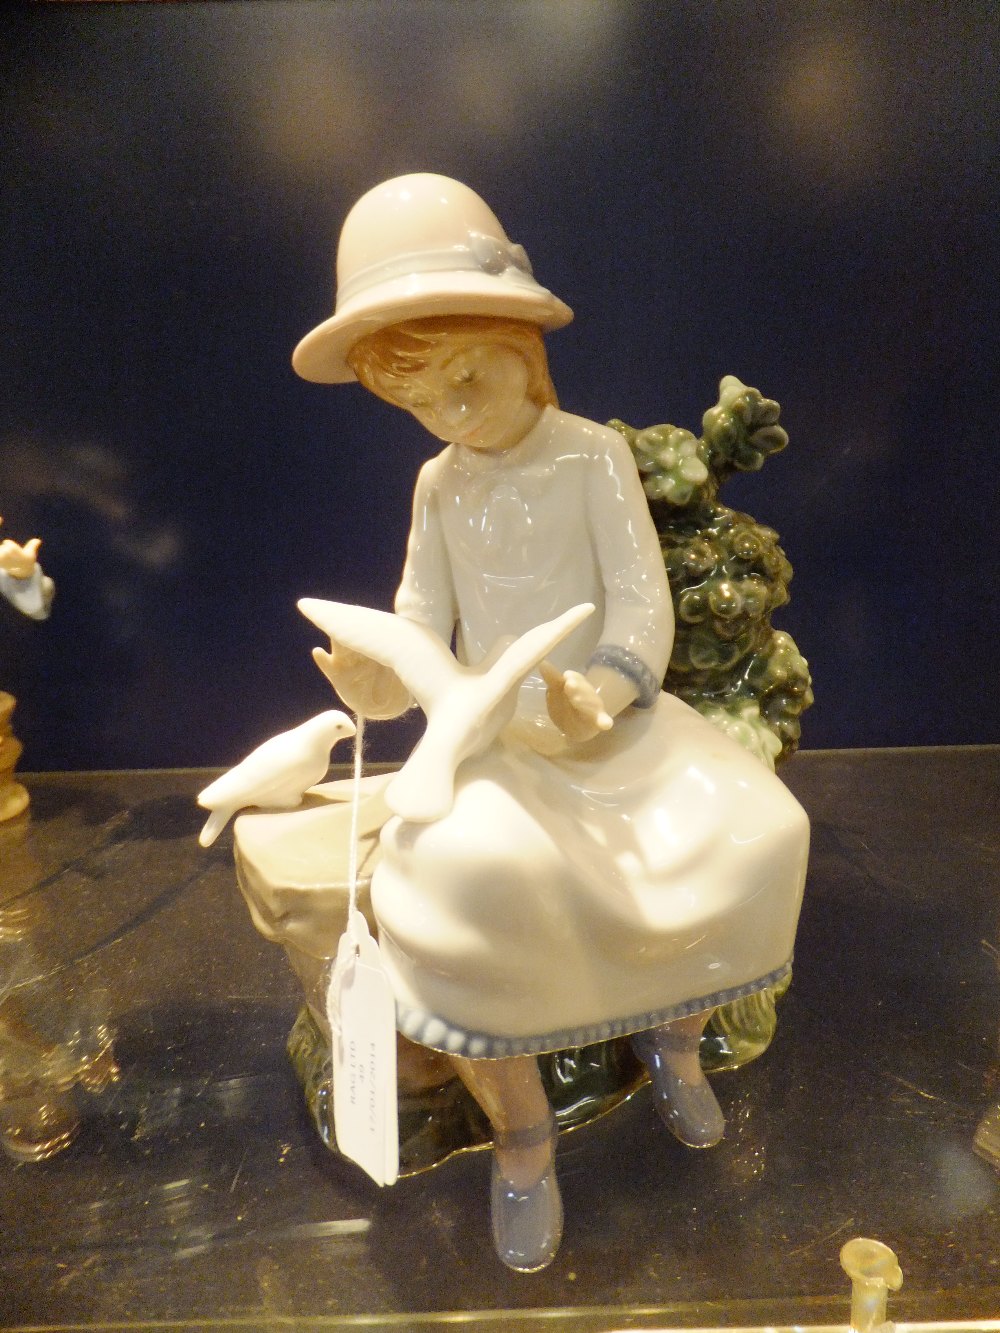 A Nao figurine "Girl with Bird"